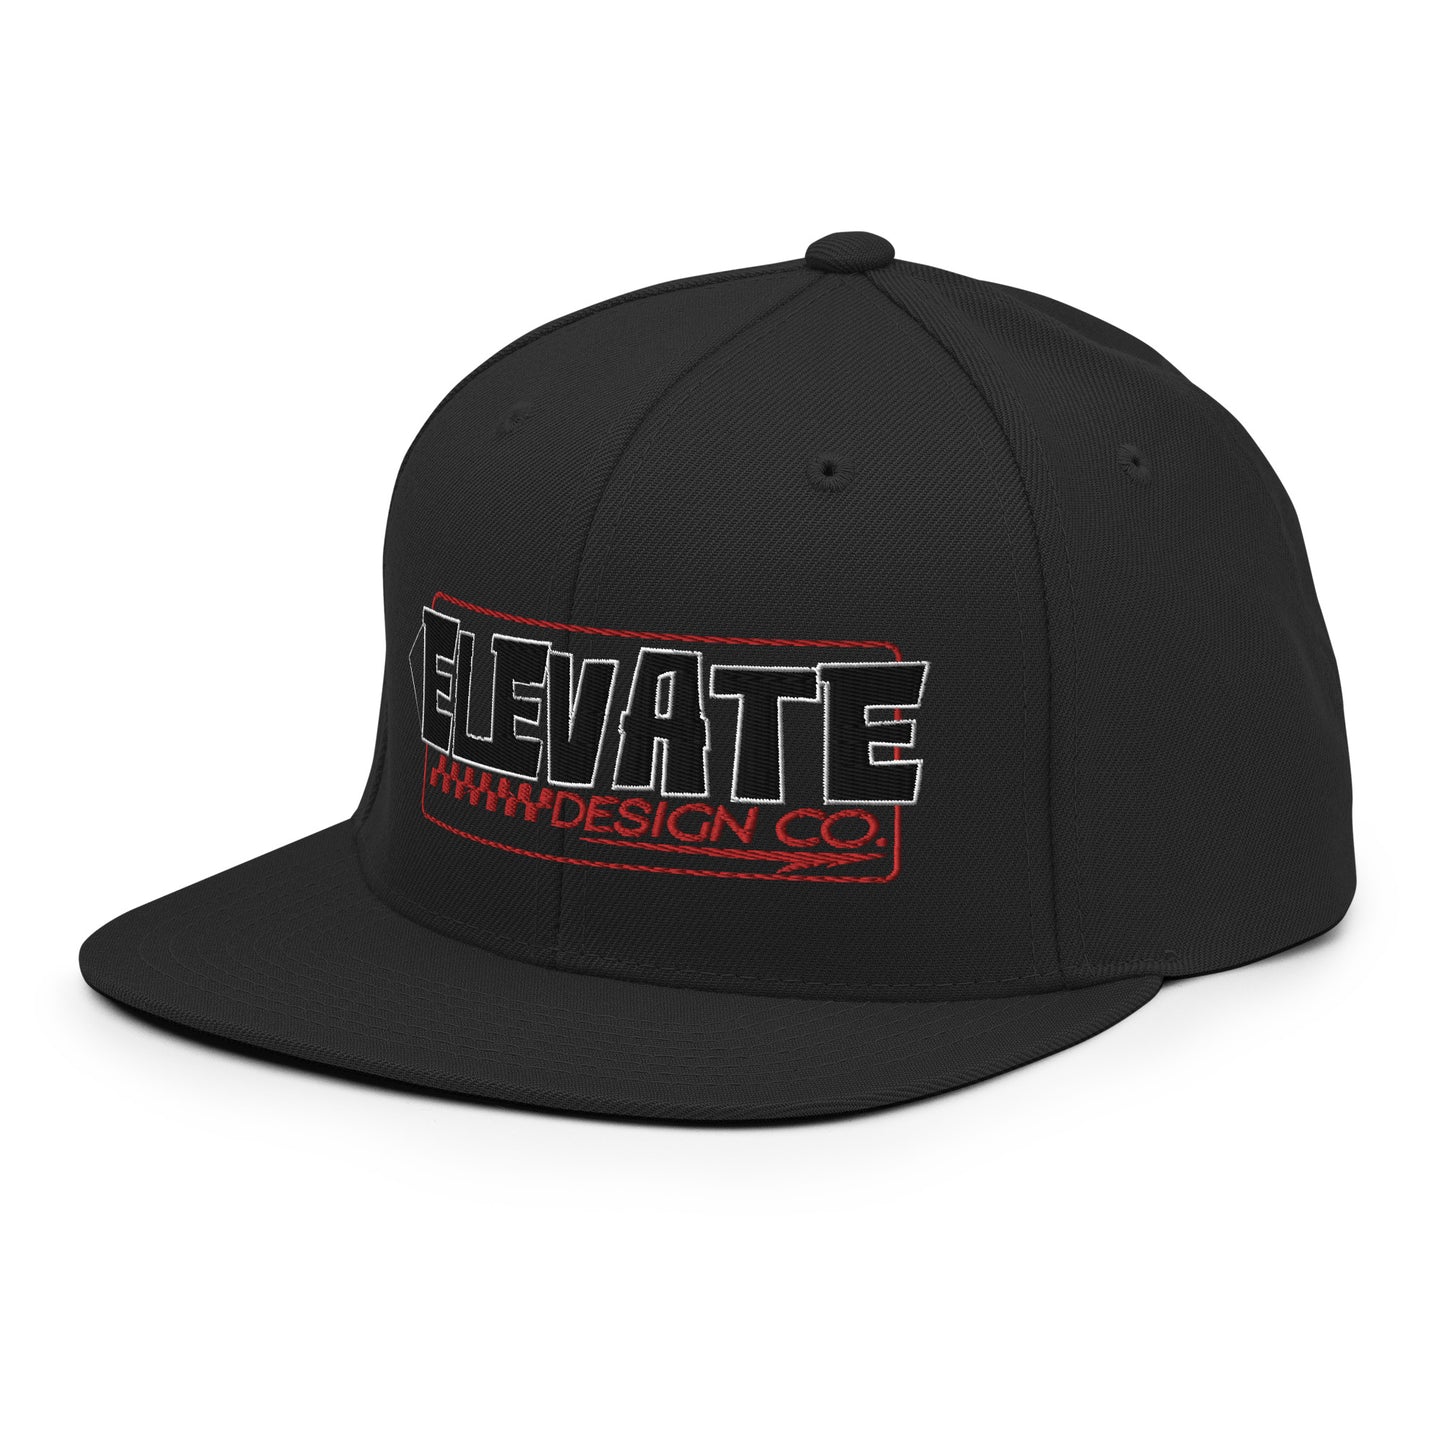 Elevate Design Co Snapback Hat